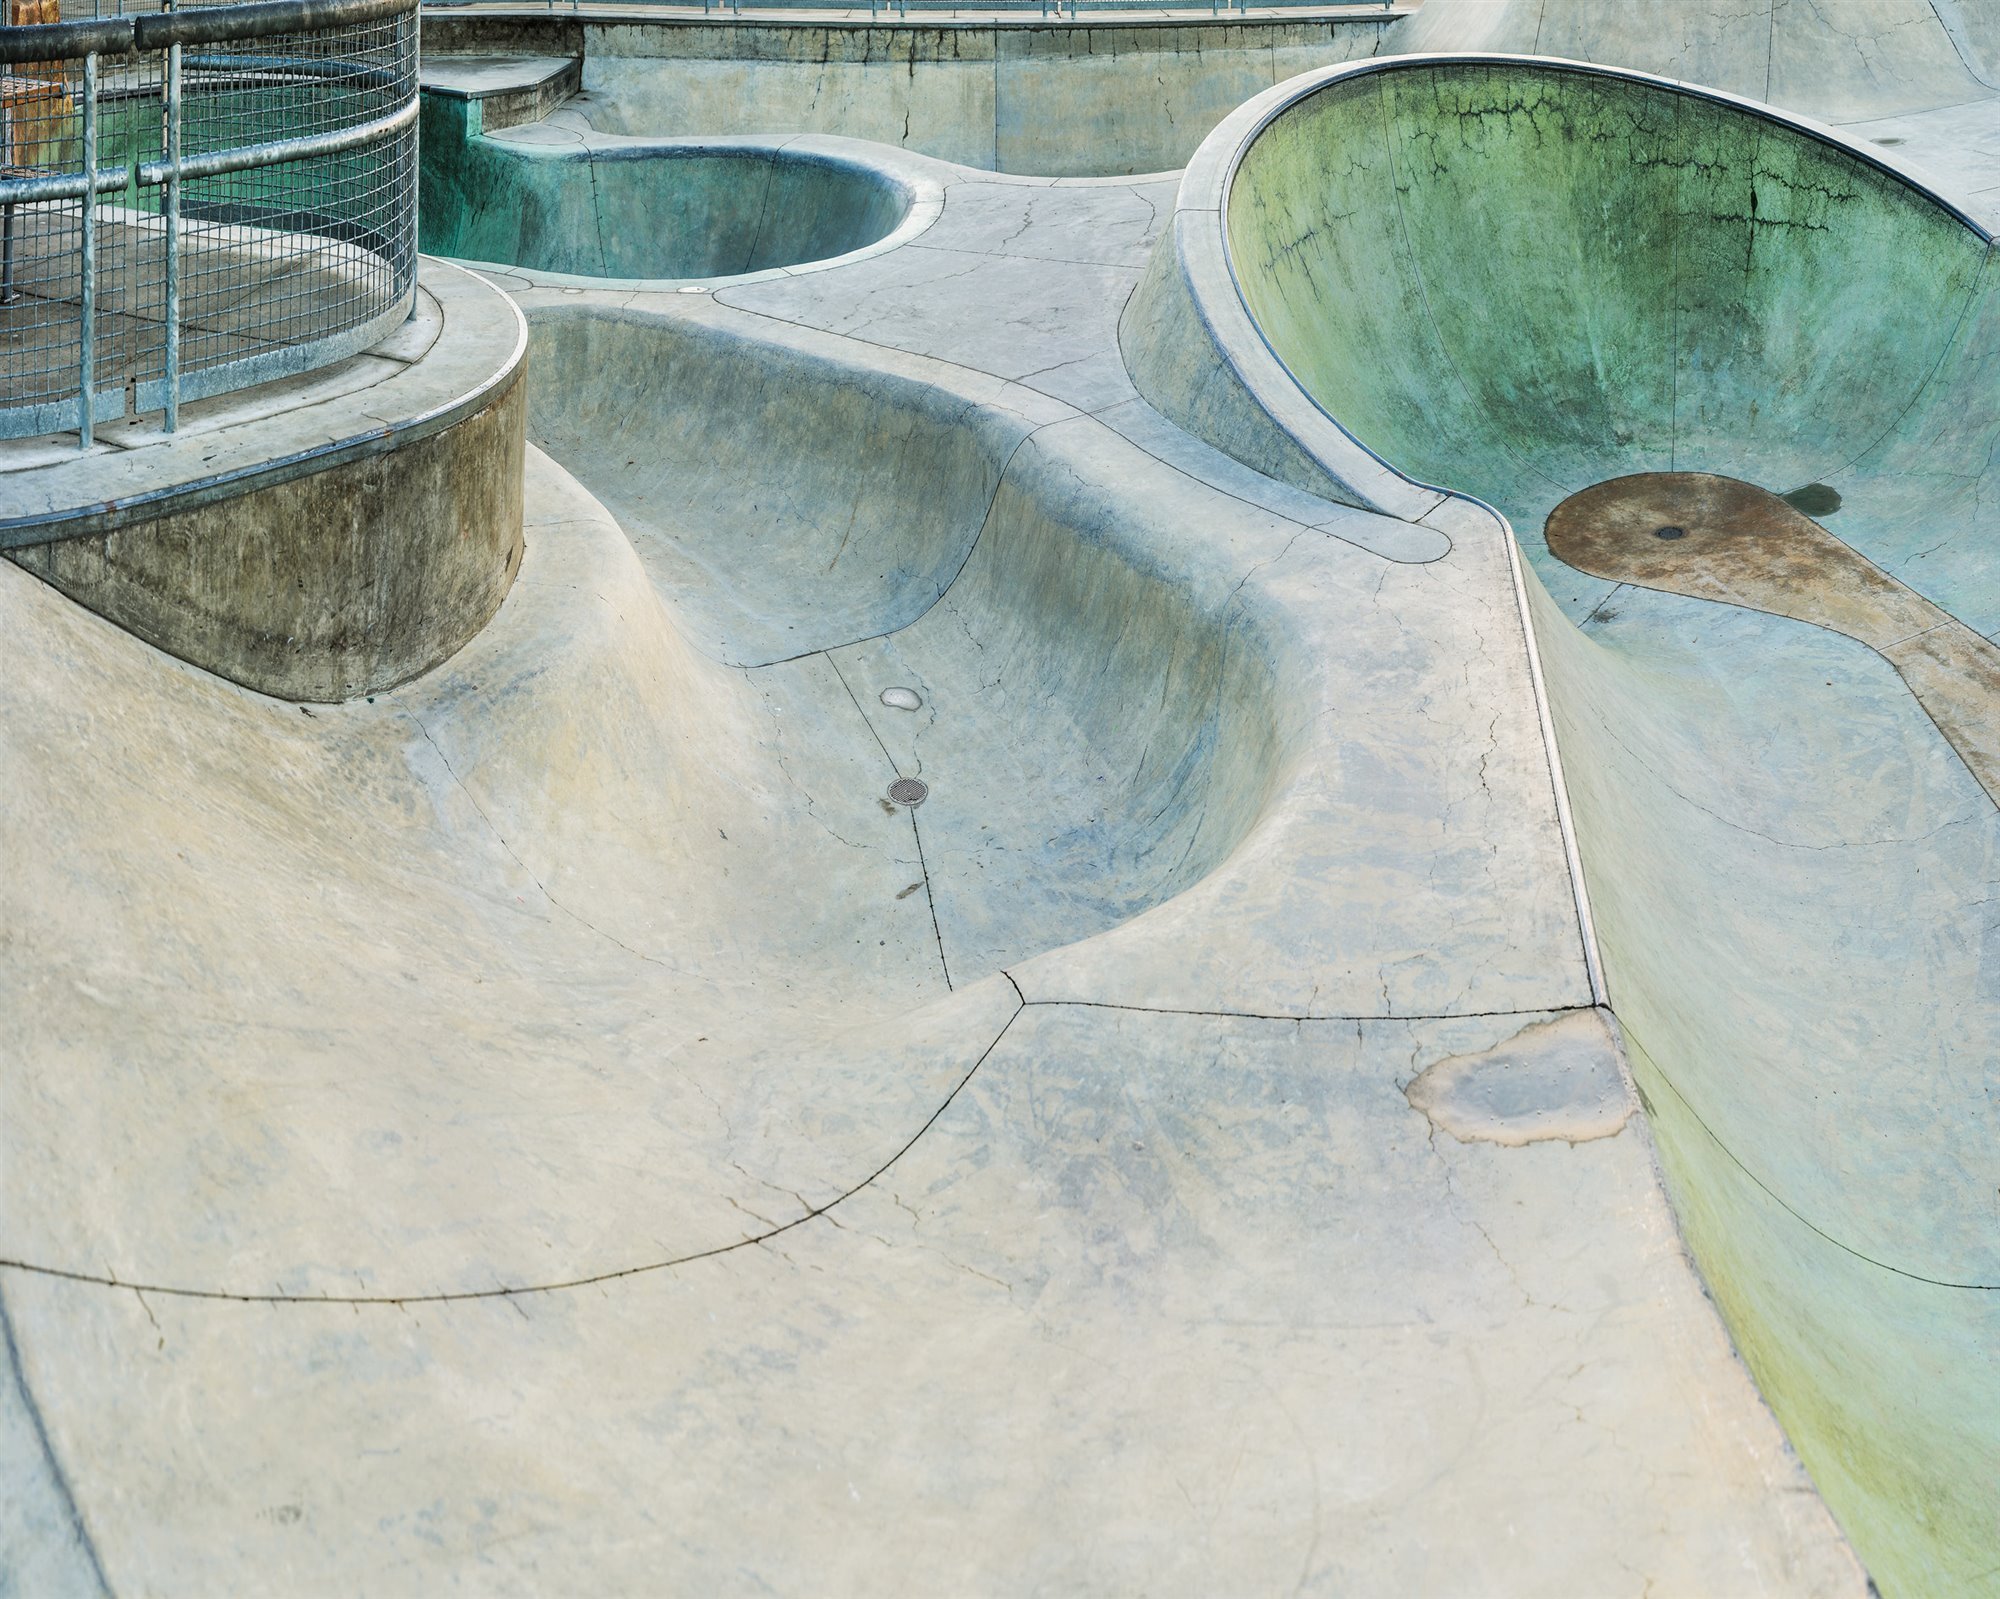 Una de las piscinas fotografiadas en la obra 'California Concrete, a Landscape of Skateparks'.